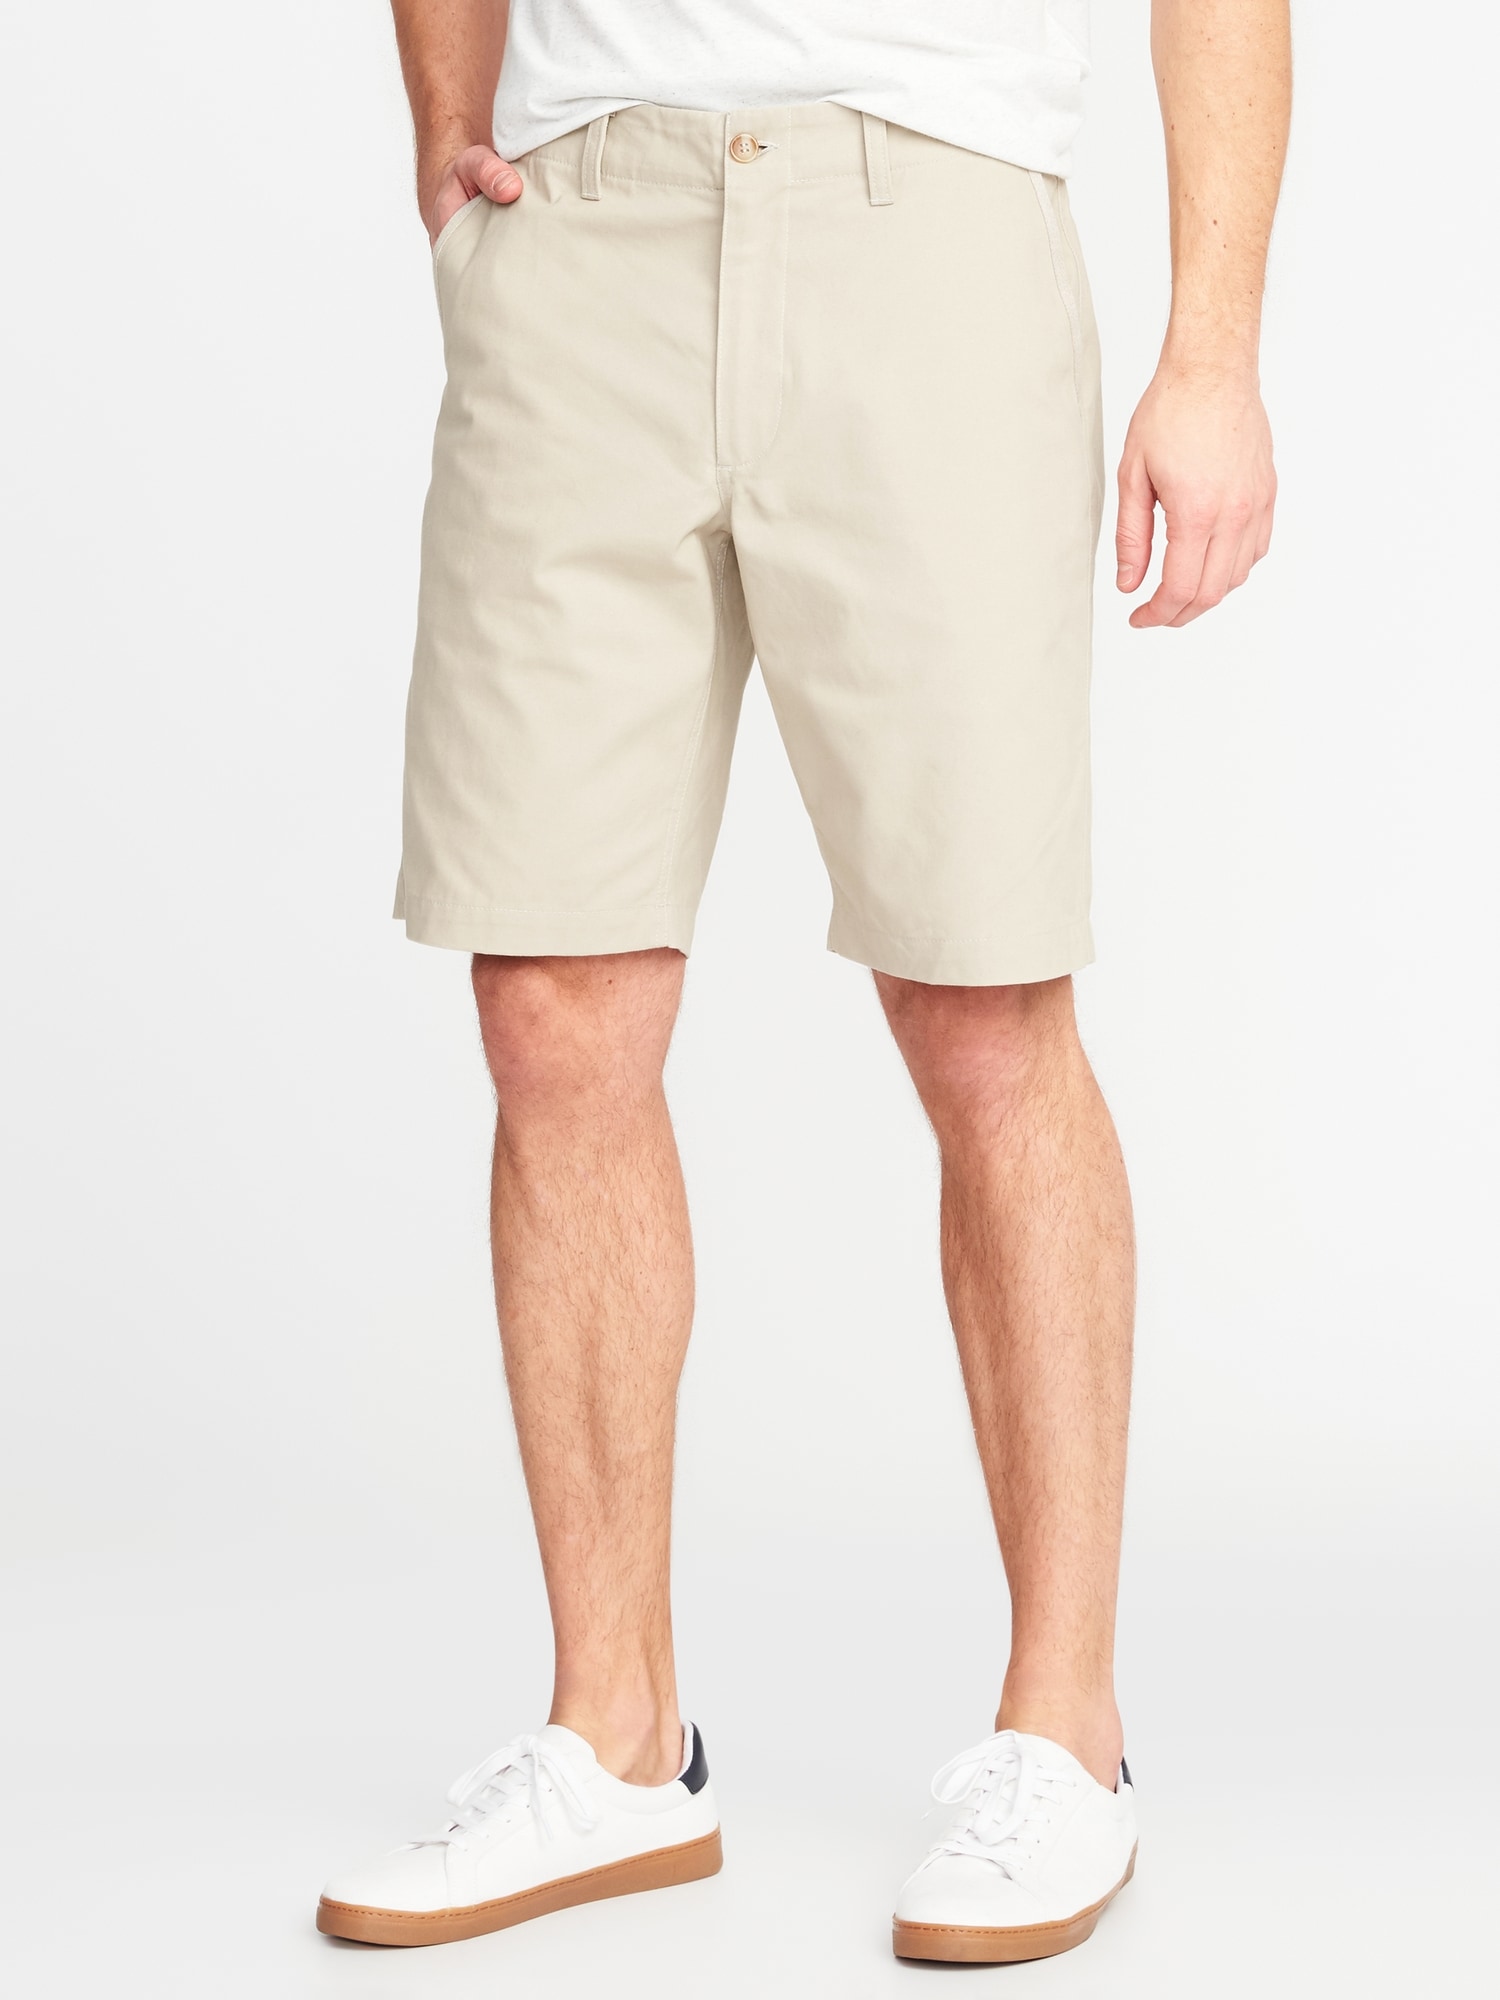 gap khaki shorts mens